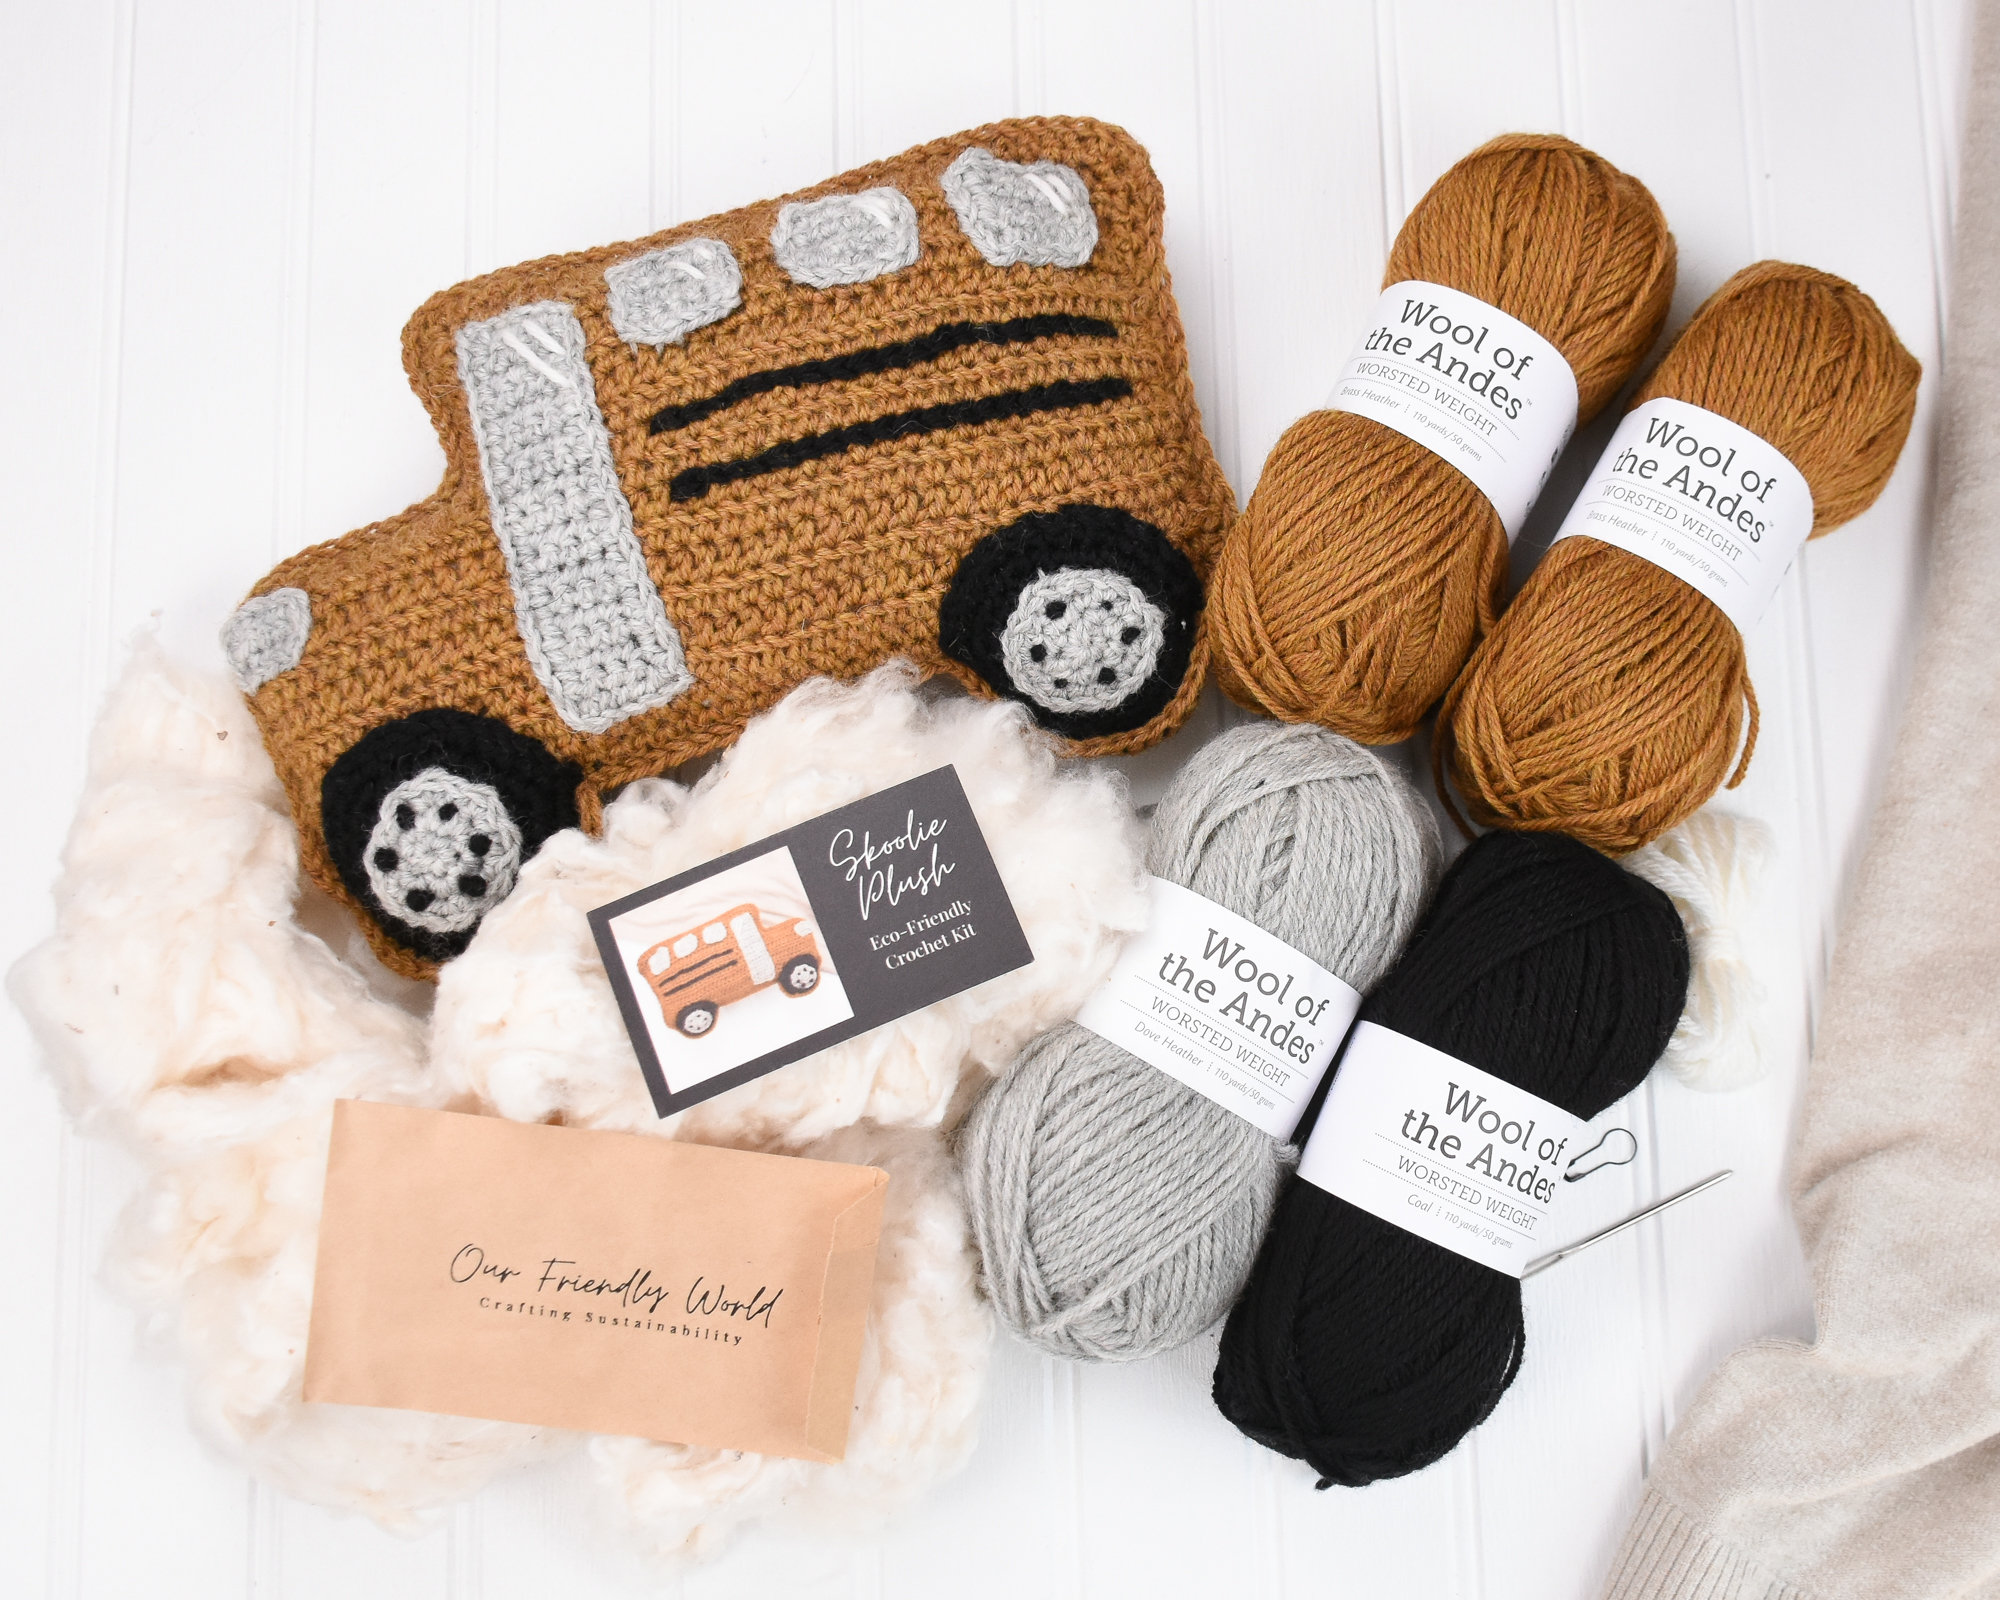 Crochet Kit for Beginners Adults -1320 Yards Crochet Set for